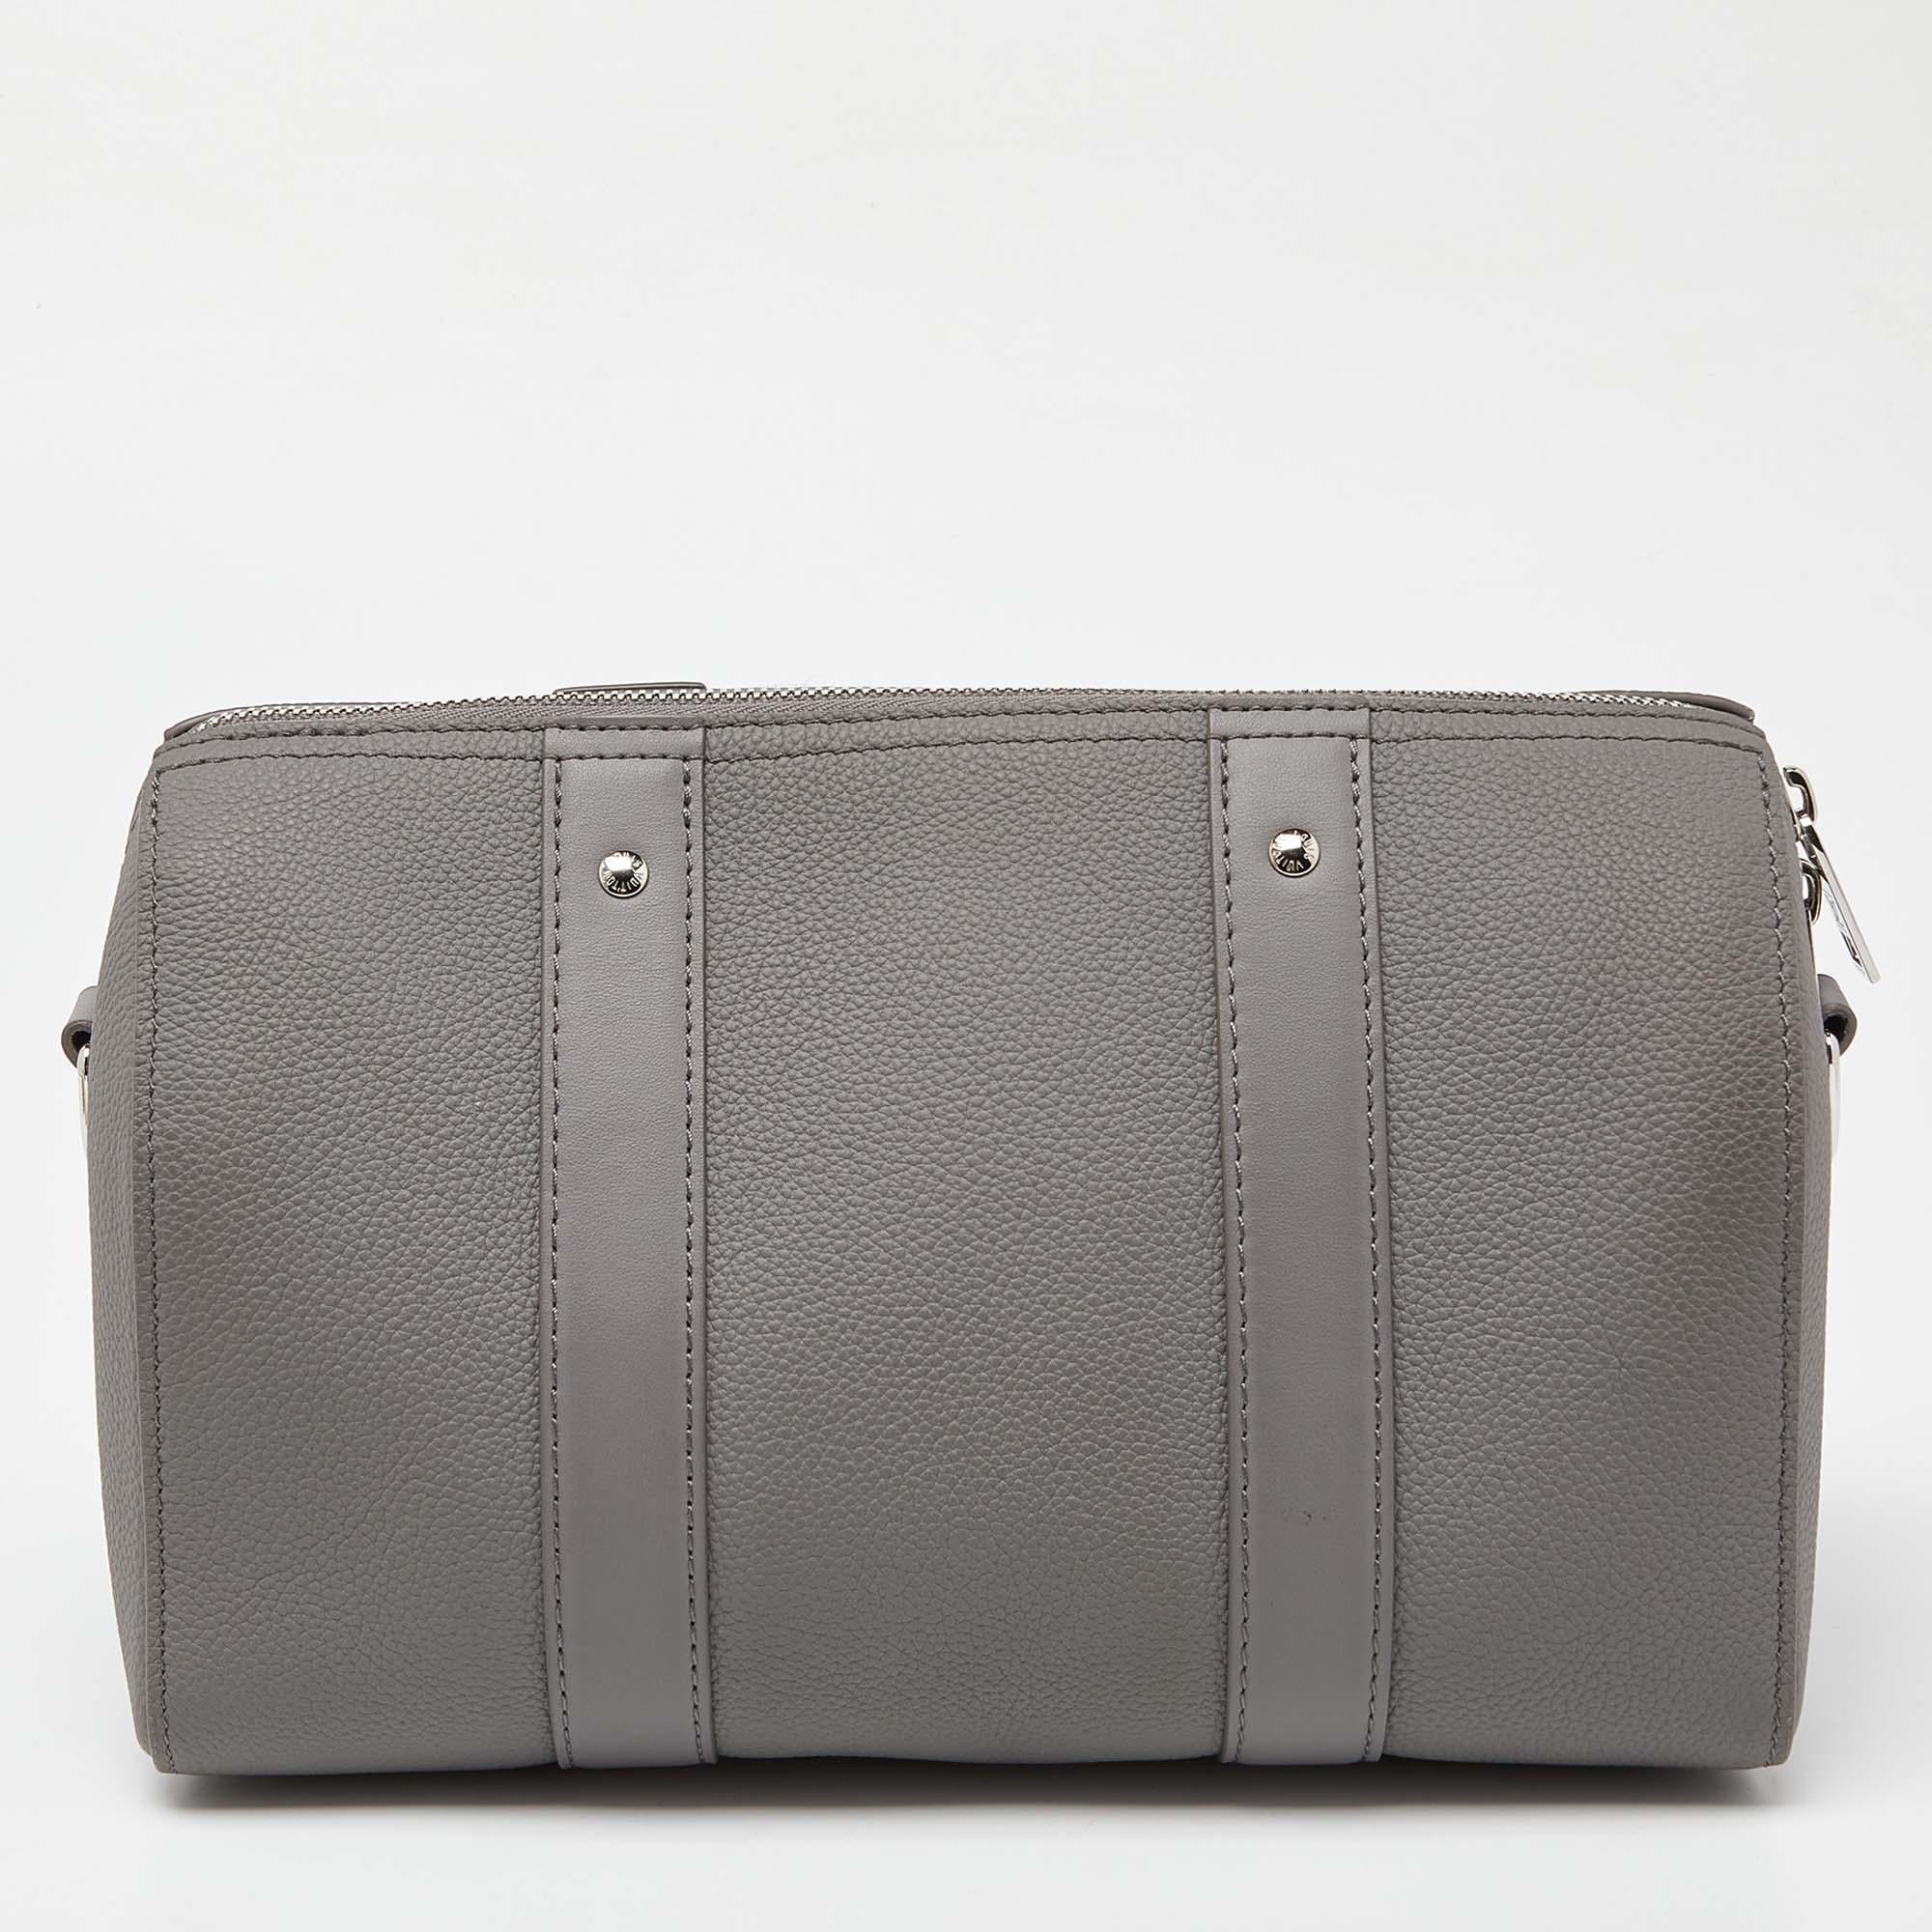 Mit dieser Louis Vuitton City Keepall Tasche können Sie alles, was Sie brauchen, stilvoll transportieren. Gefertigt aus den besten MATERIALEN, ist dies ein Accessoire, das dauerhaften Stil und Gebrauch verspricht.

Enthält: Original-Staubbeutel,